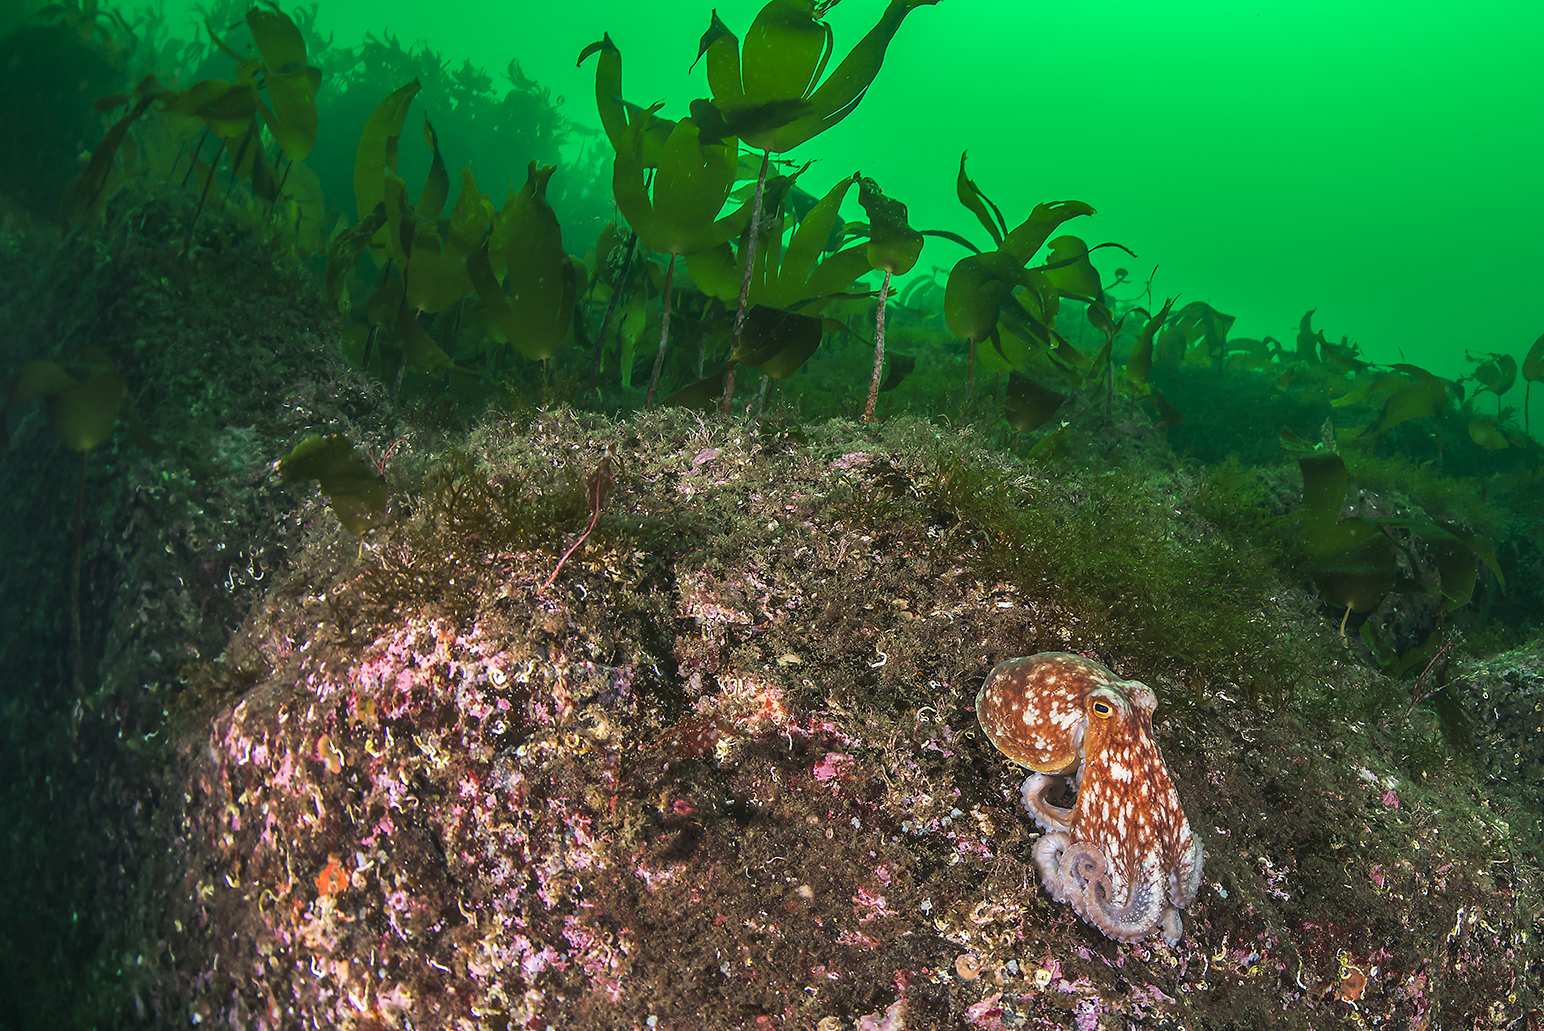 Foto: Erling Svensen
Utgiver: Ocean Photo
Artsdatabanken: https://www.artsdatabanken.no/taxon/Cephalopoda/473